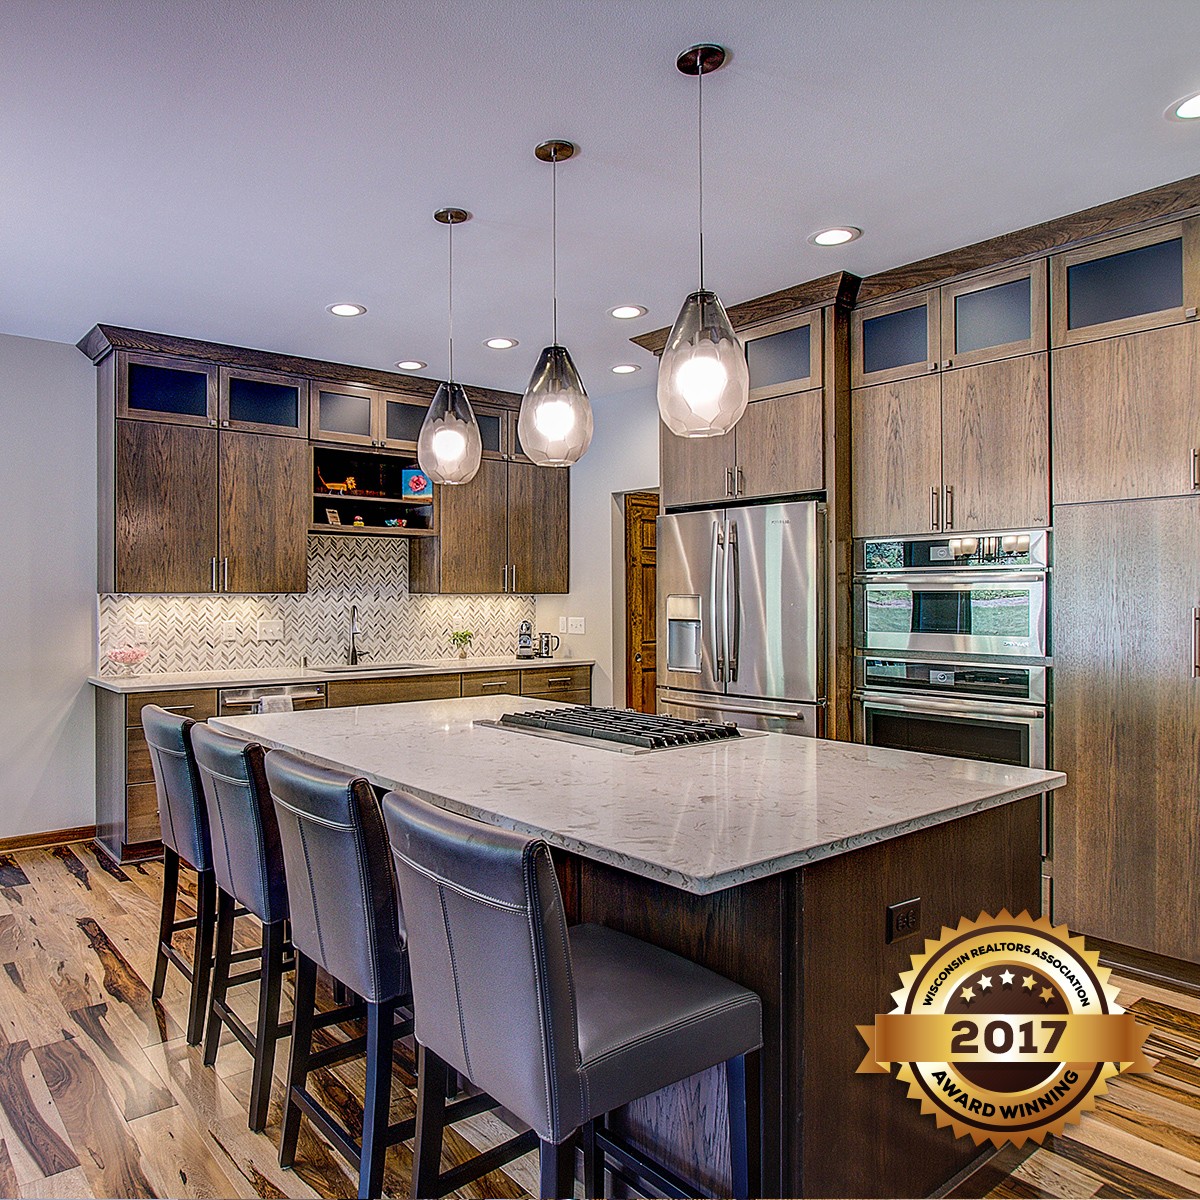 Award Winning Kitchen Designs 2022 - Ideas Home Interior